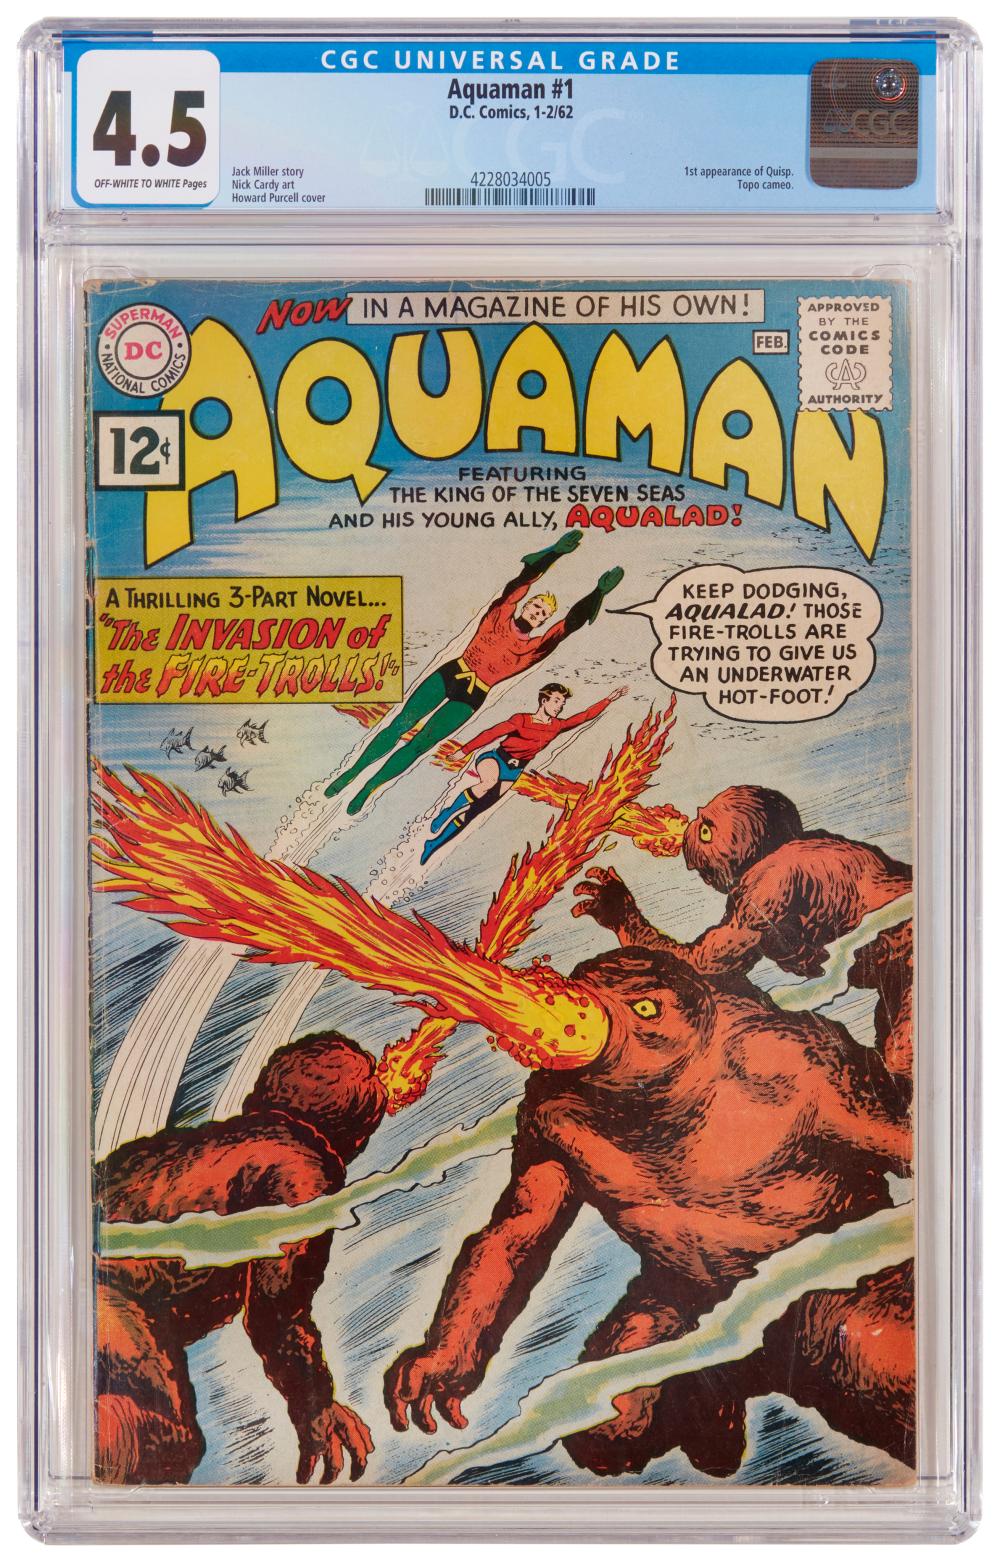 AQUAMAN #1 (DC COMICS, 1962)Aquaman